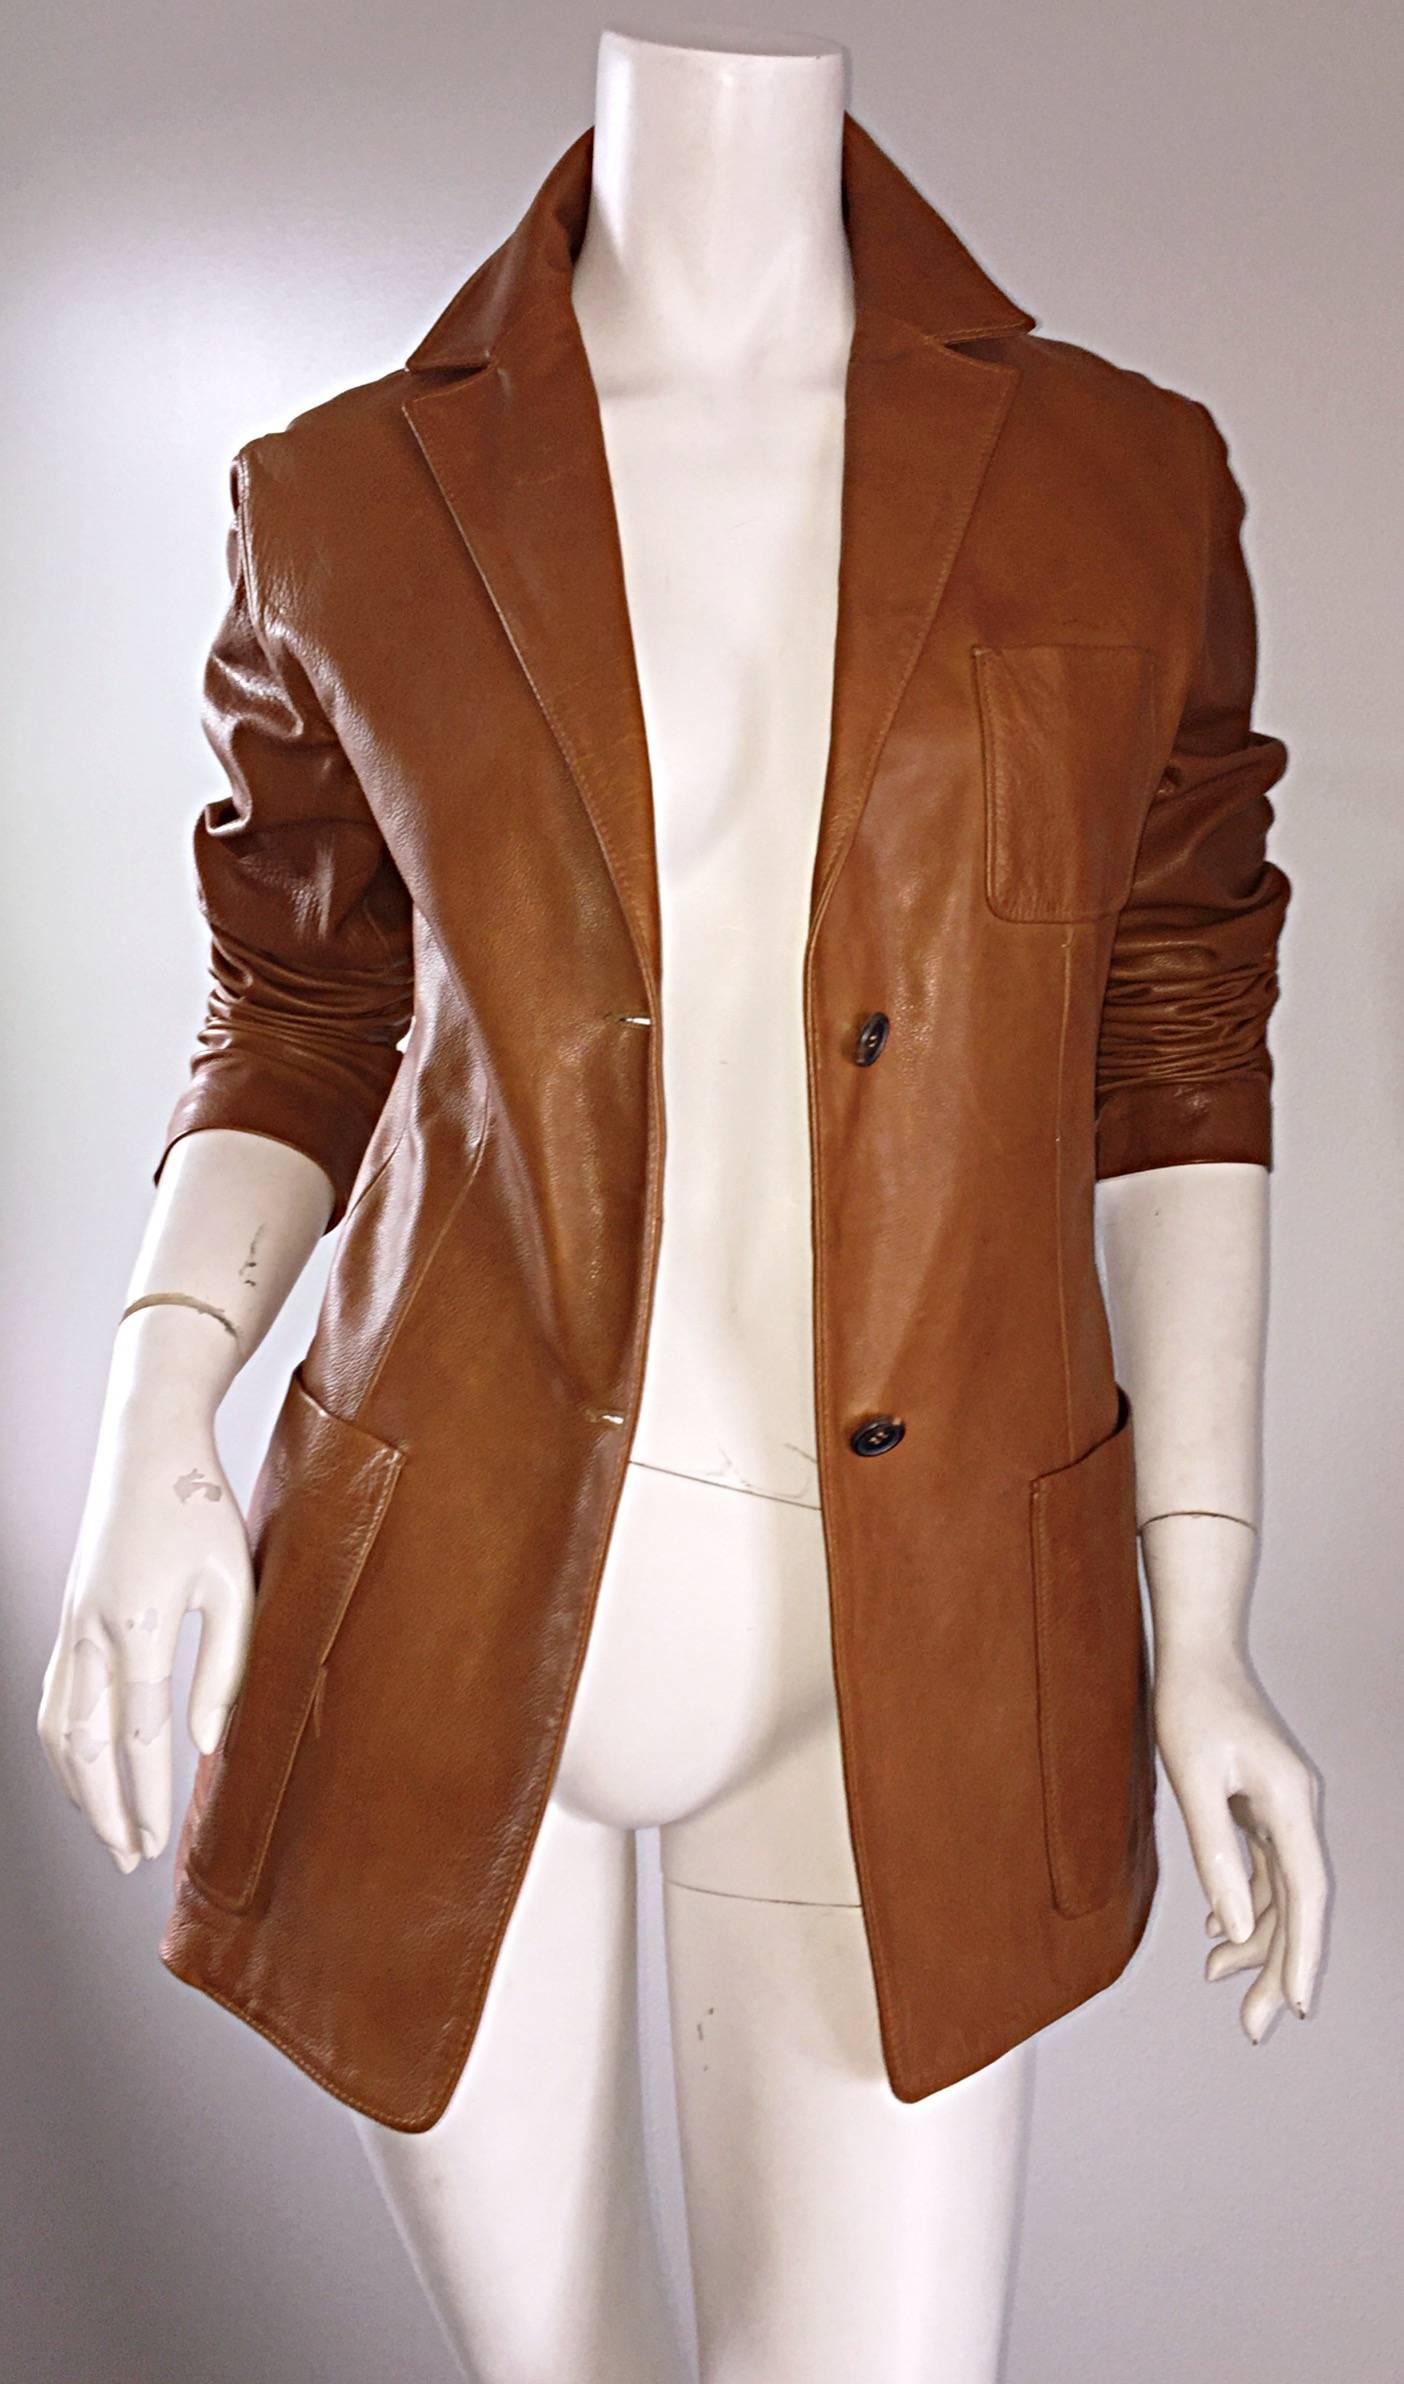 jil sander vintage leather jacket